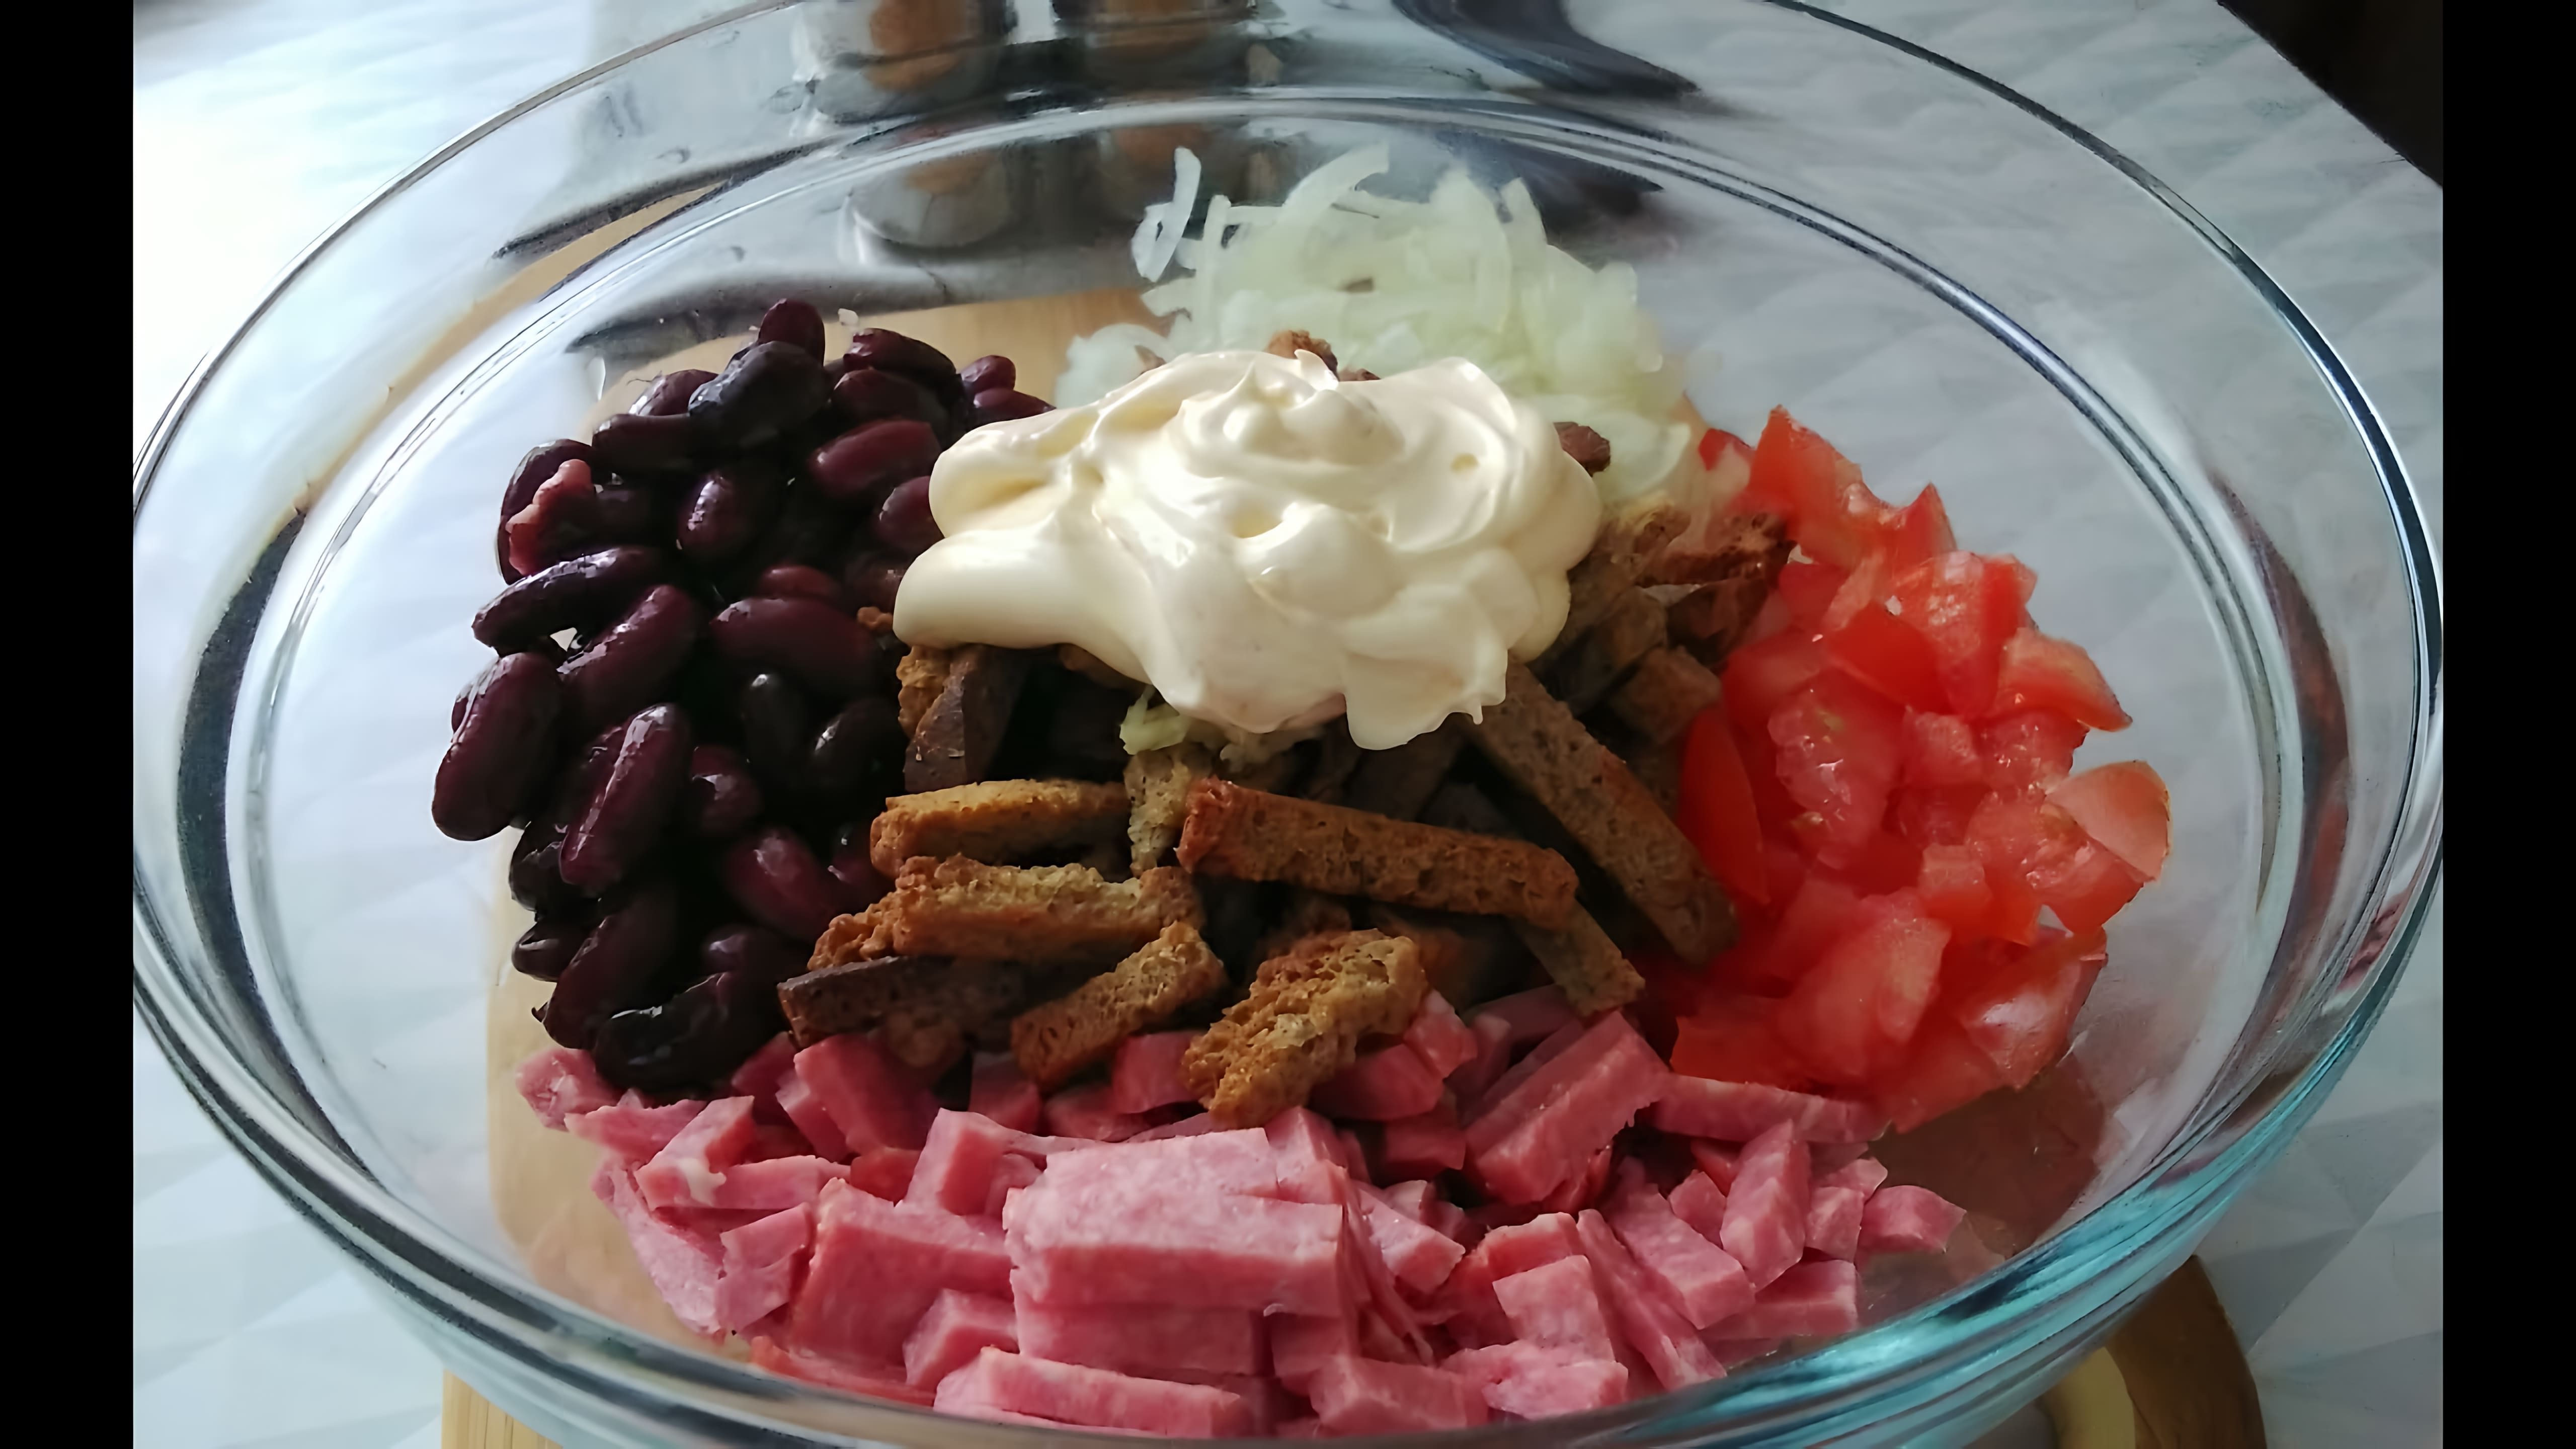 Салат с красной фасолью, колбасой и сухариками - это вкусное и сытное блюдо, которое можно приготовить в домашних условиях